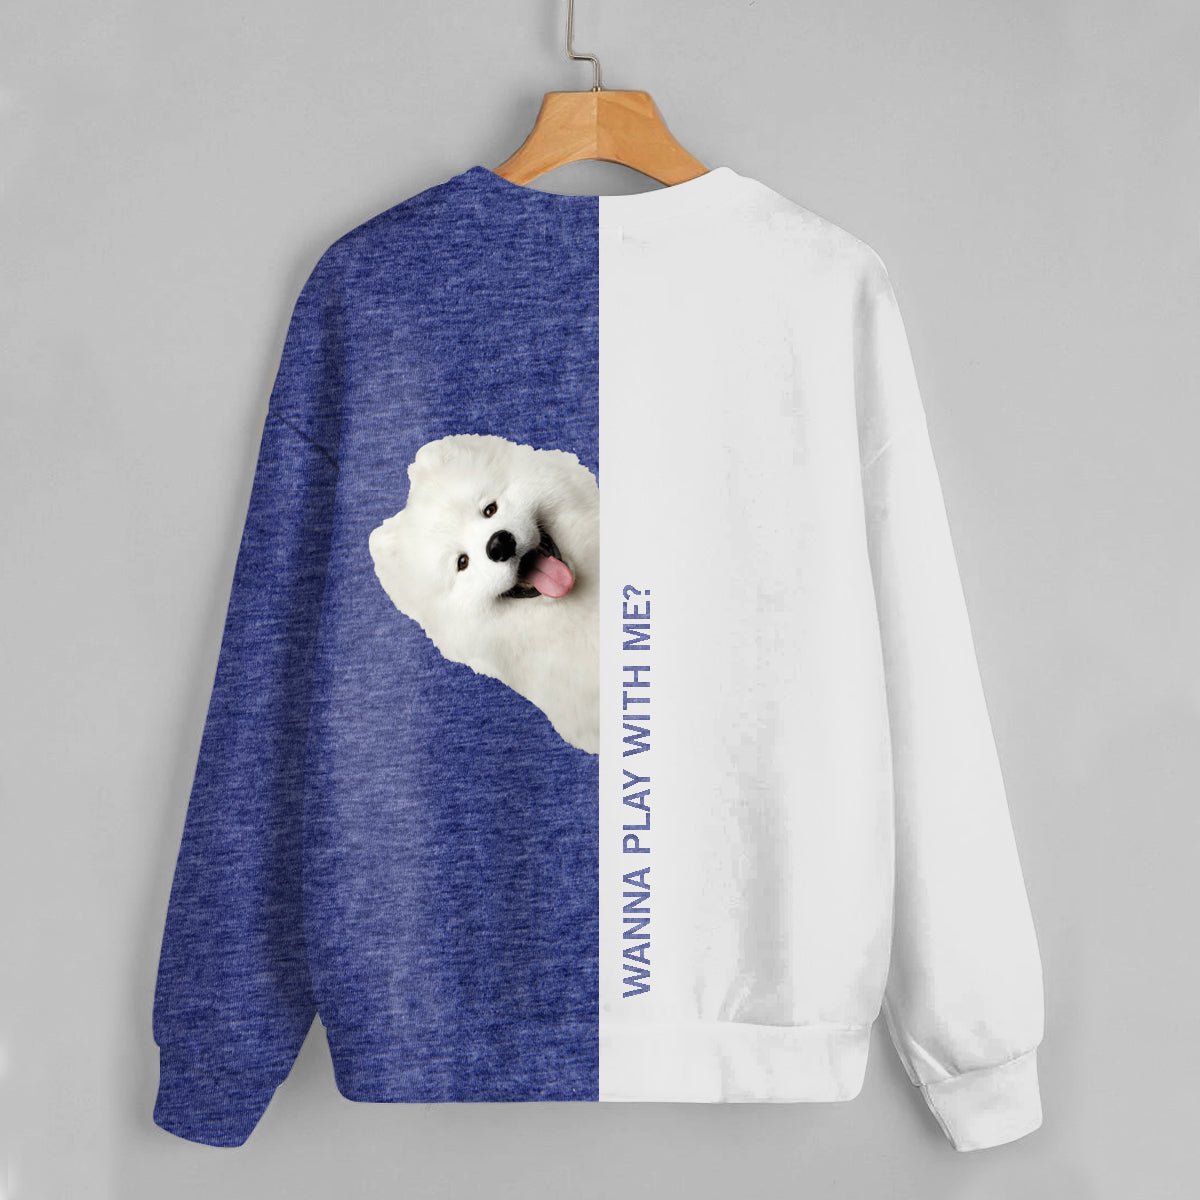 Funny Happy Time - Samoyed Sweatshirt V1